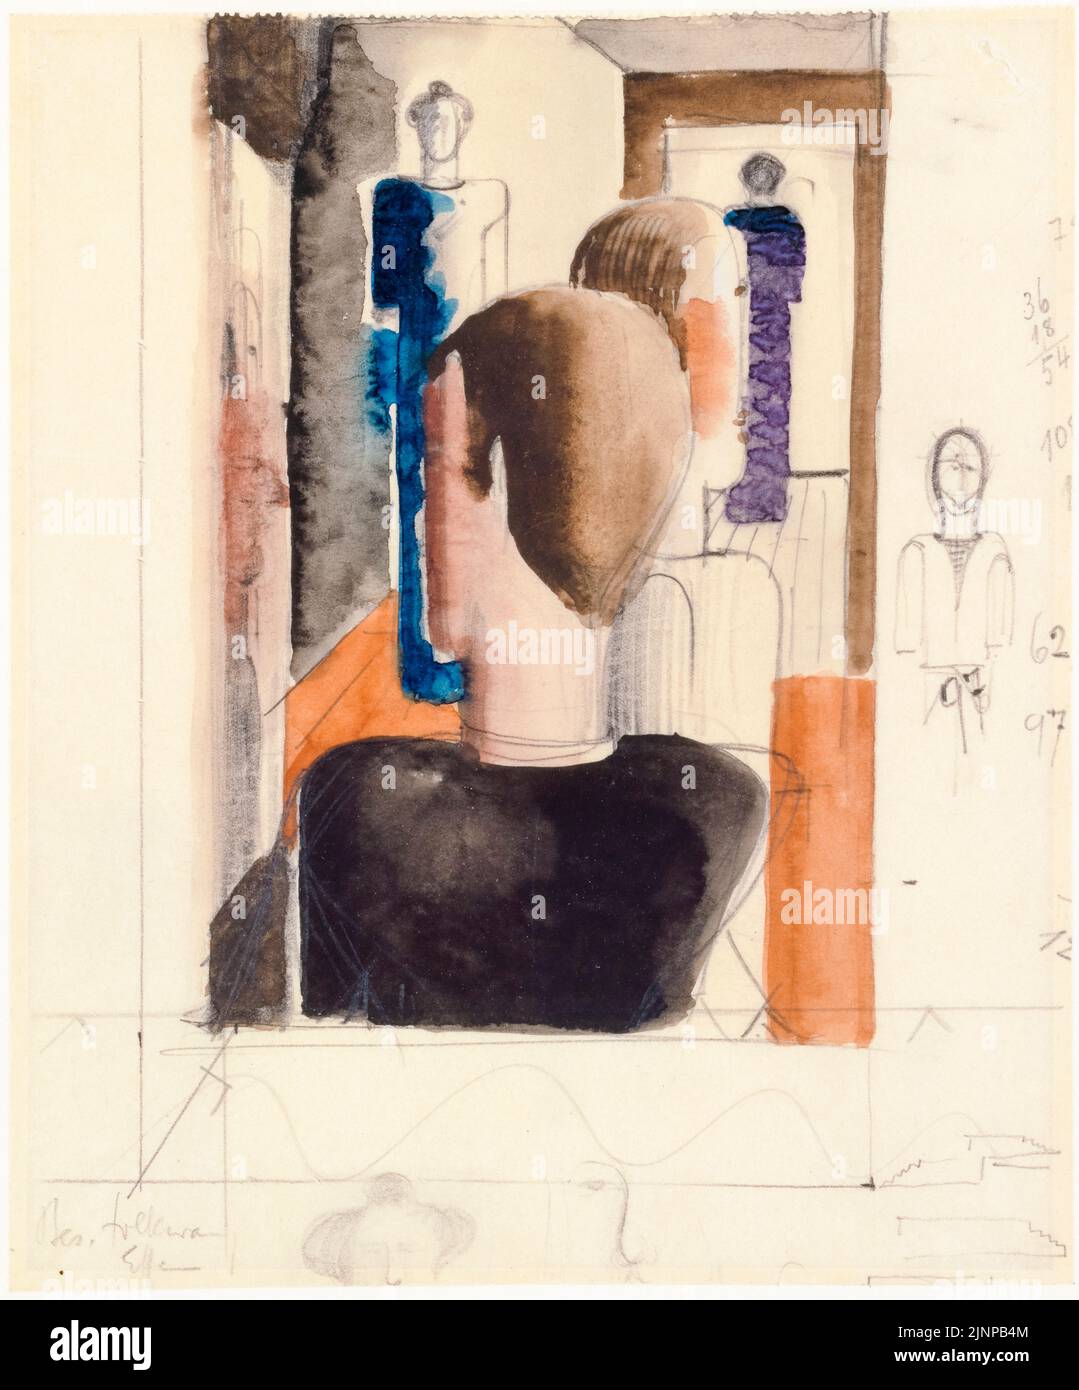 Oskar Schlemmer, étude préliminaire pour l'intérieur avec cinq figures, Roman, peinture, 1925 Banque D'Images